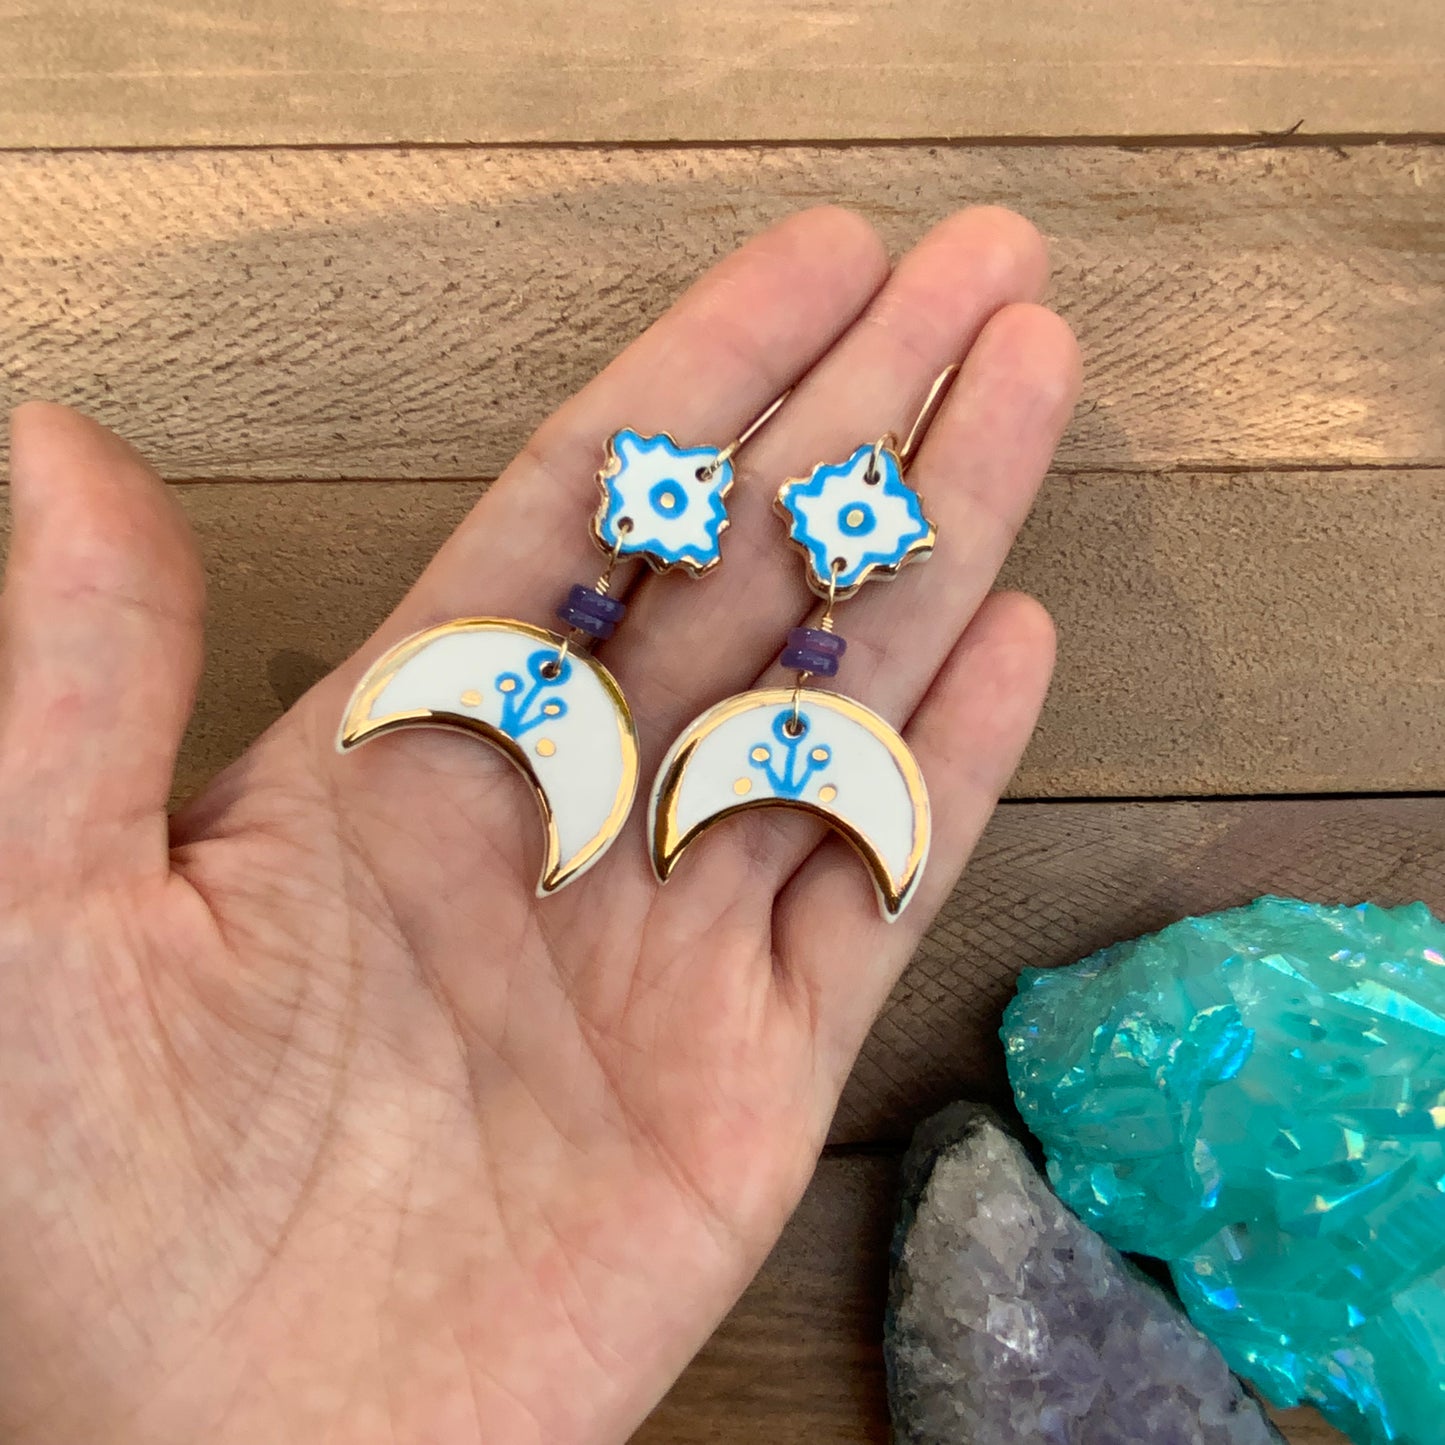 Ceramic Southwestern moon earrings